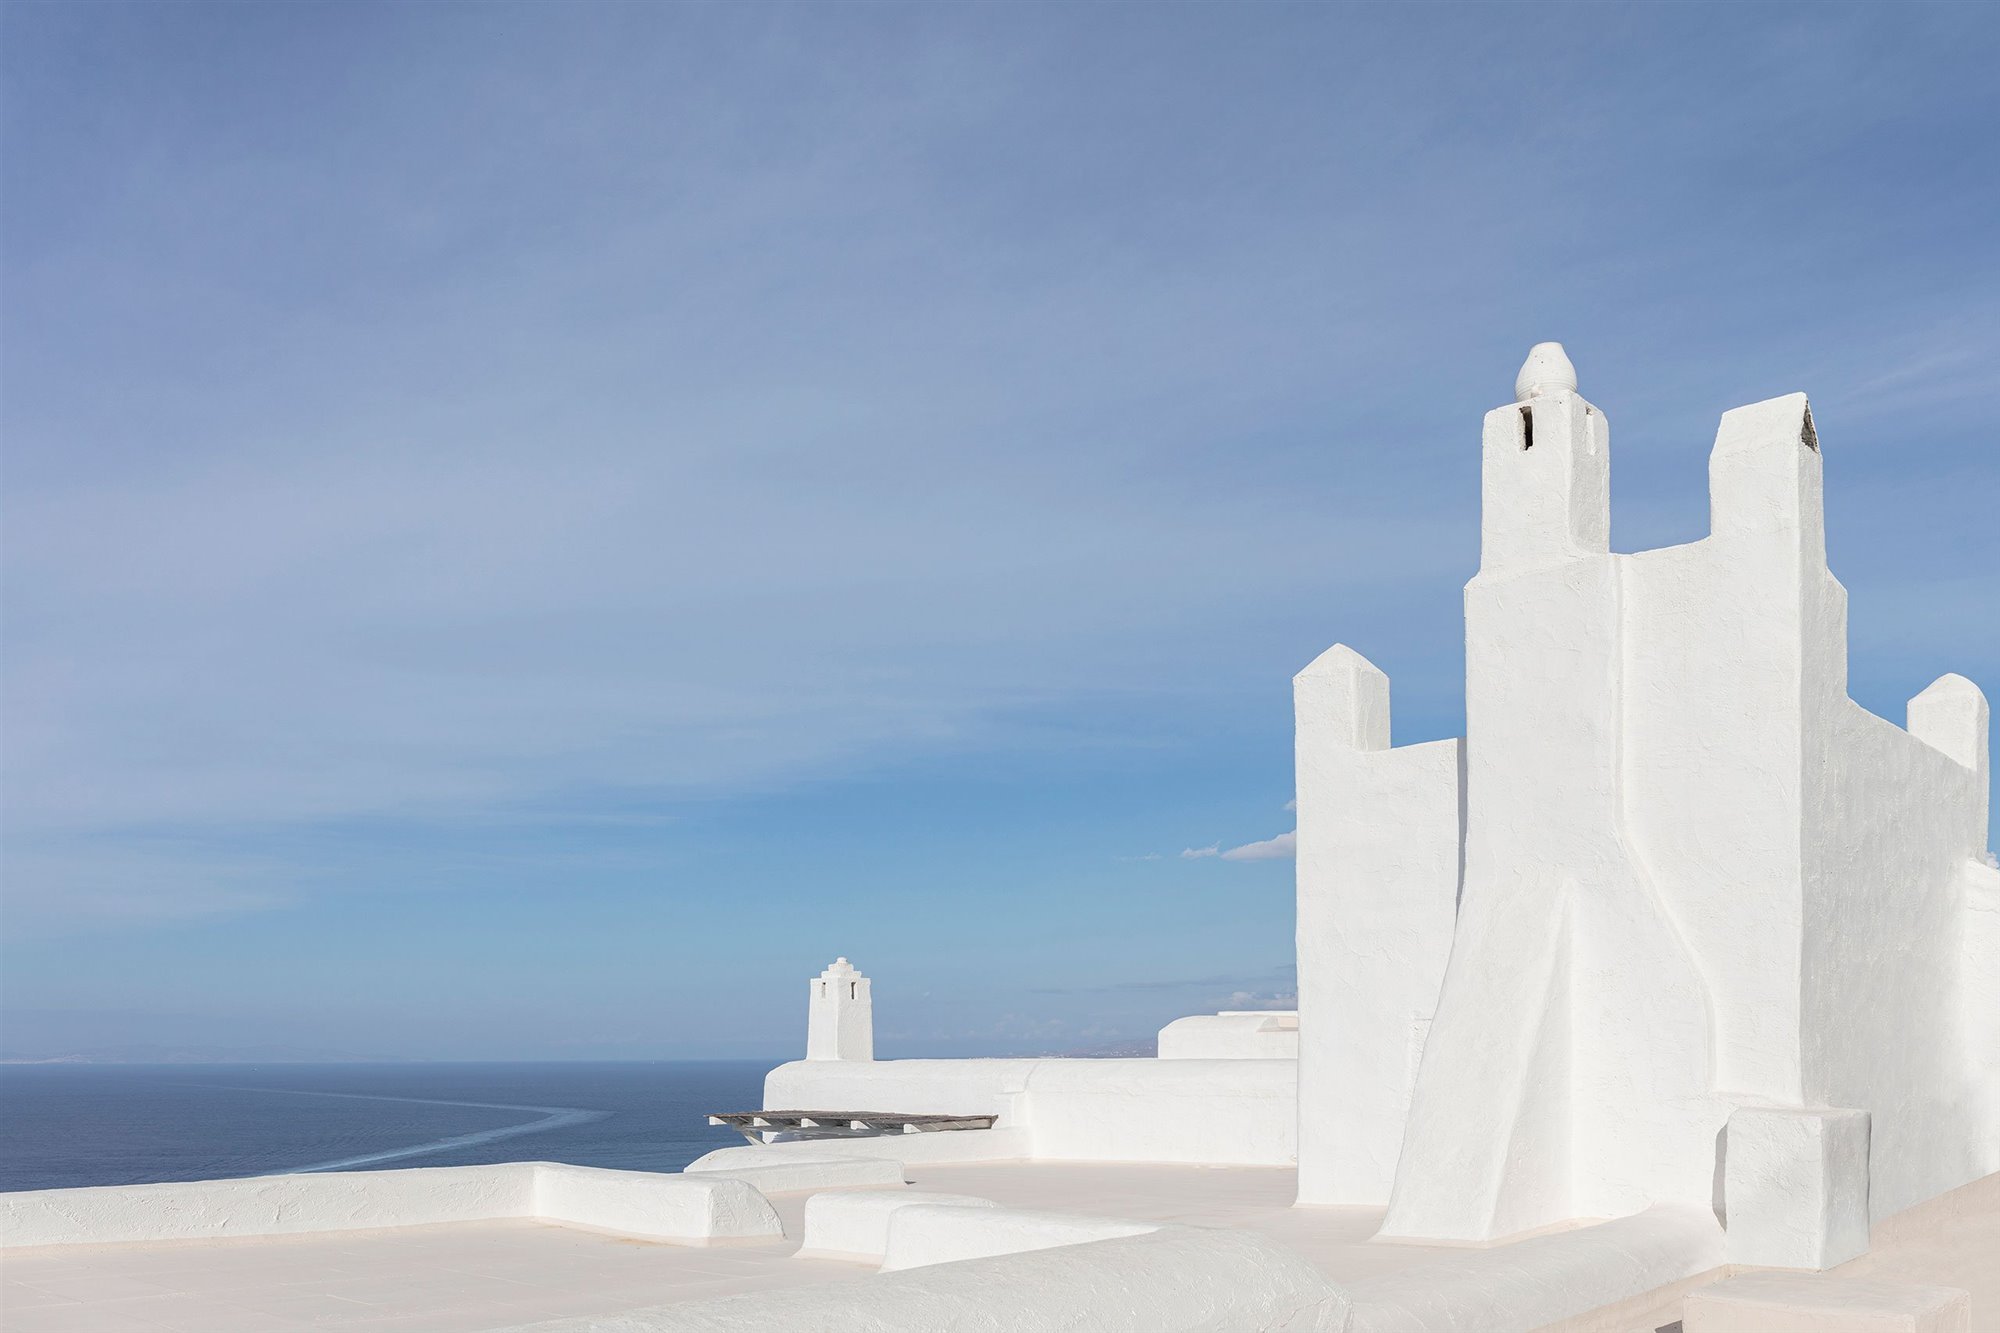 Casa de verano con fachada blanca en el mediterraneo en la isla de Mykonos tejado